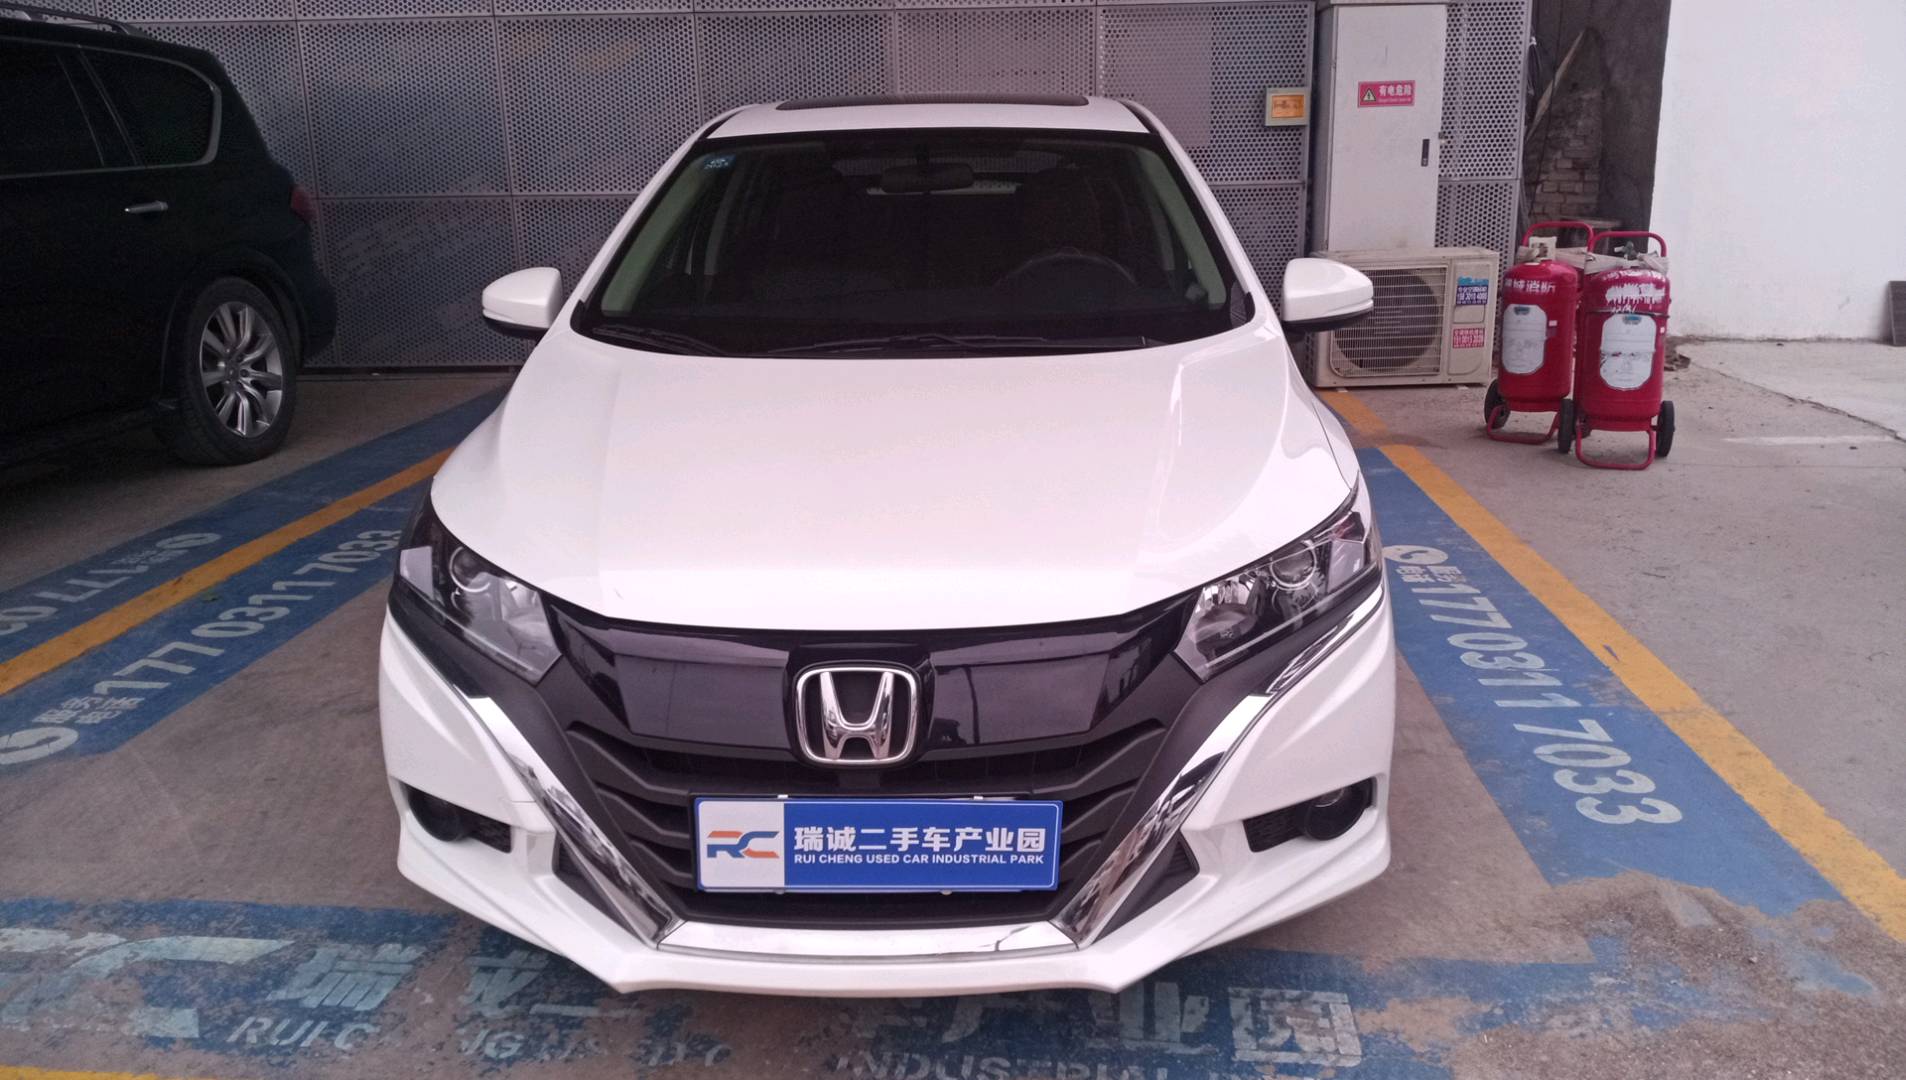 本田 竞瑞 2017款 1.5L CVT舒适版 二手车市场选瑞诚